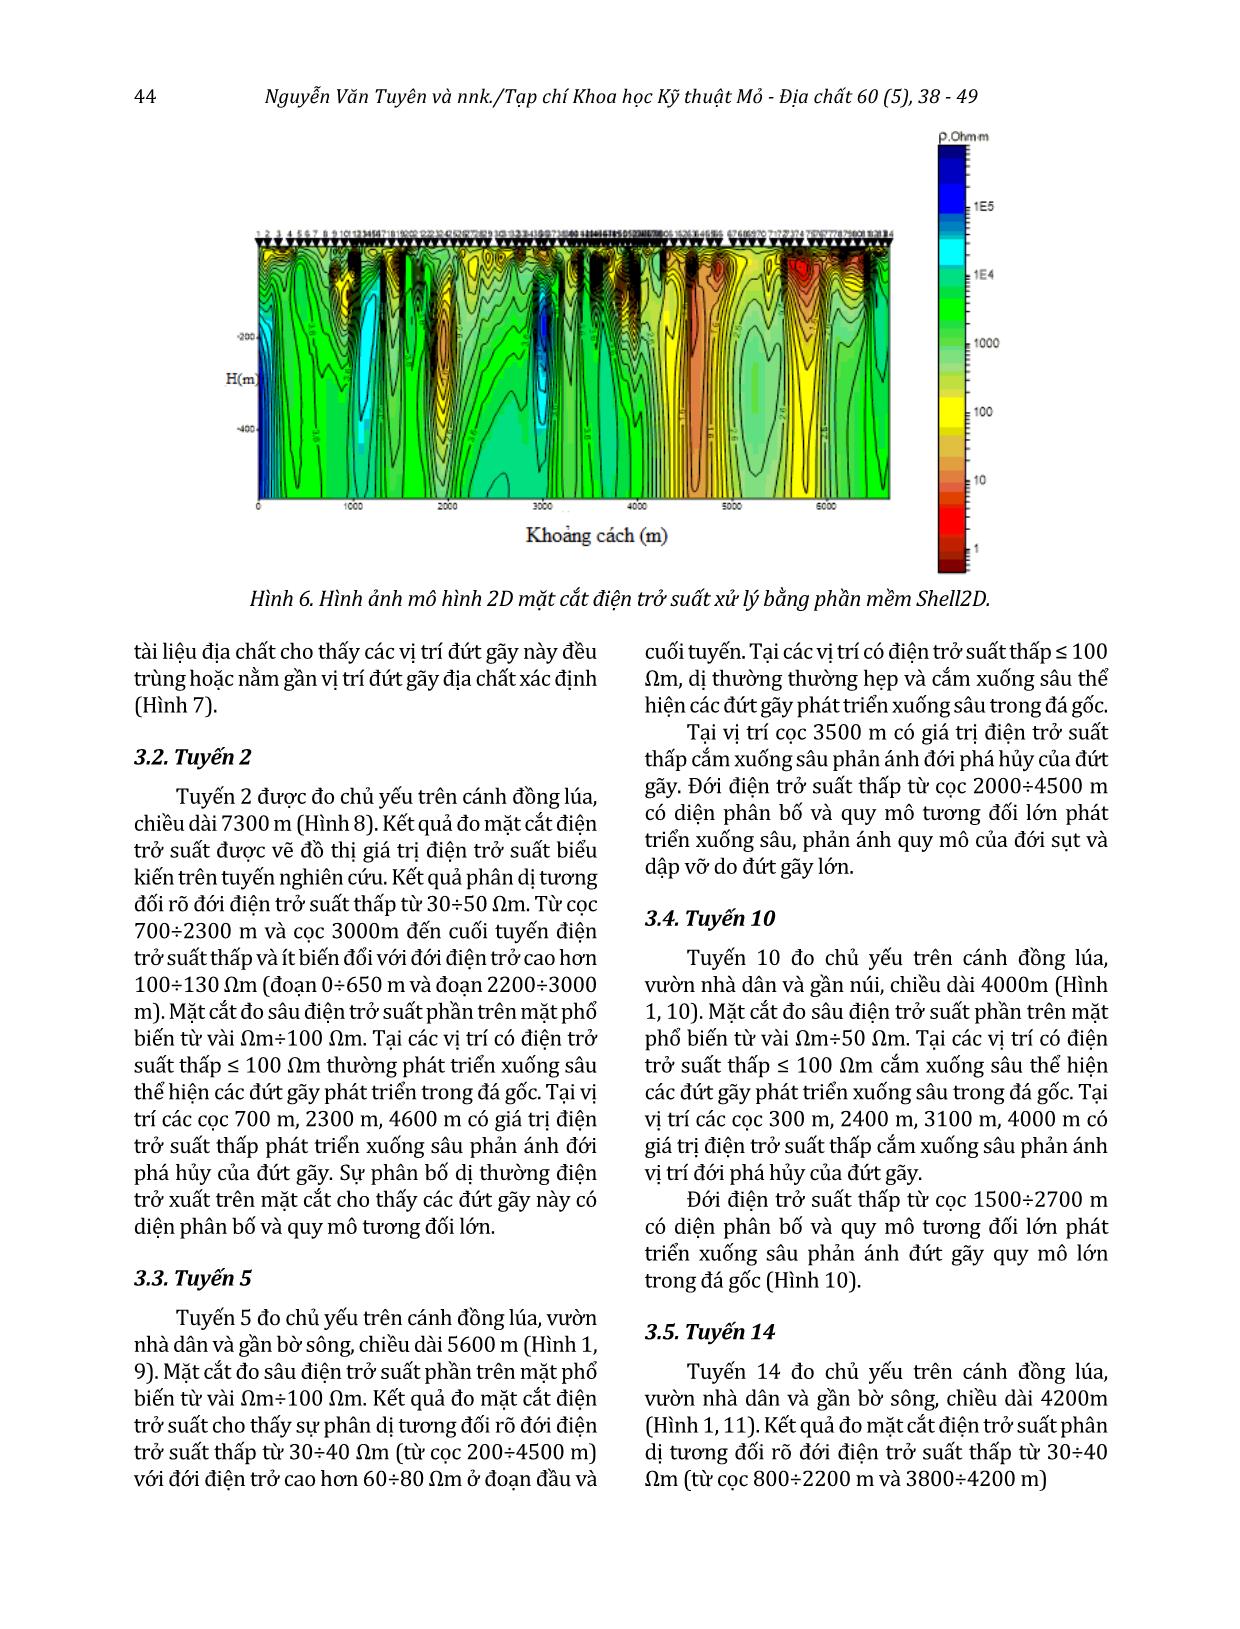 Hiệu quả phương pháp đo sâu từ tellua âm tần kết hợp đo mặt cắt điện trong xác định cấu trúc địa chất trẻ khu vực Quảng Nam, miền Trung Việt Nam trang 7